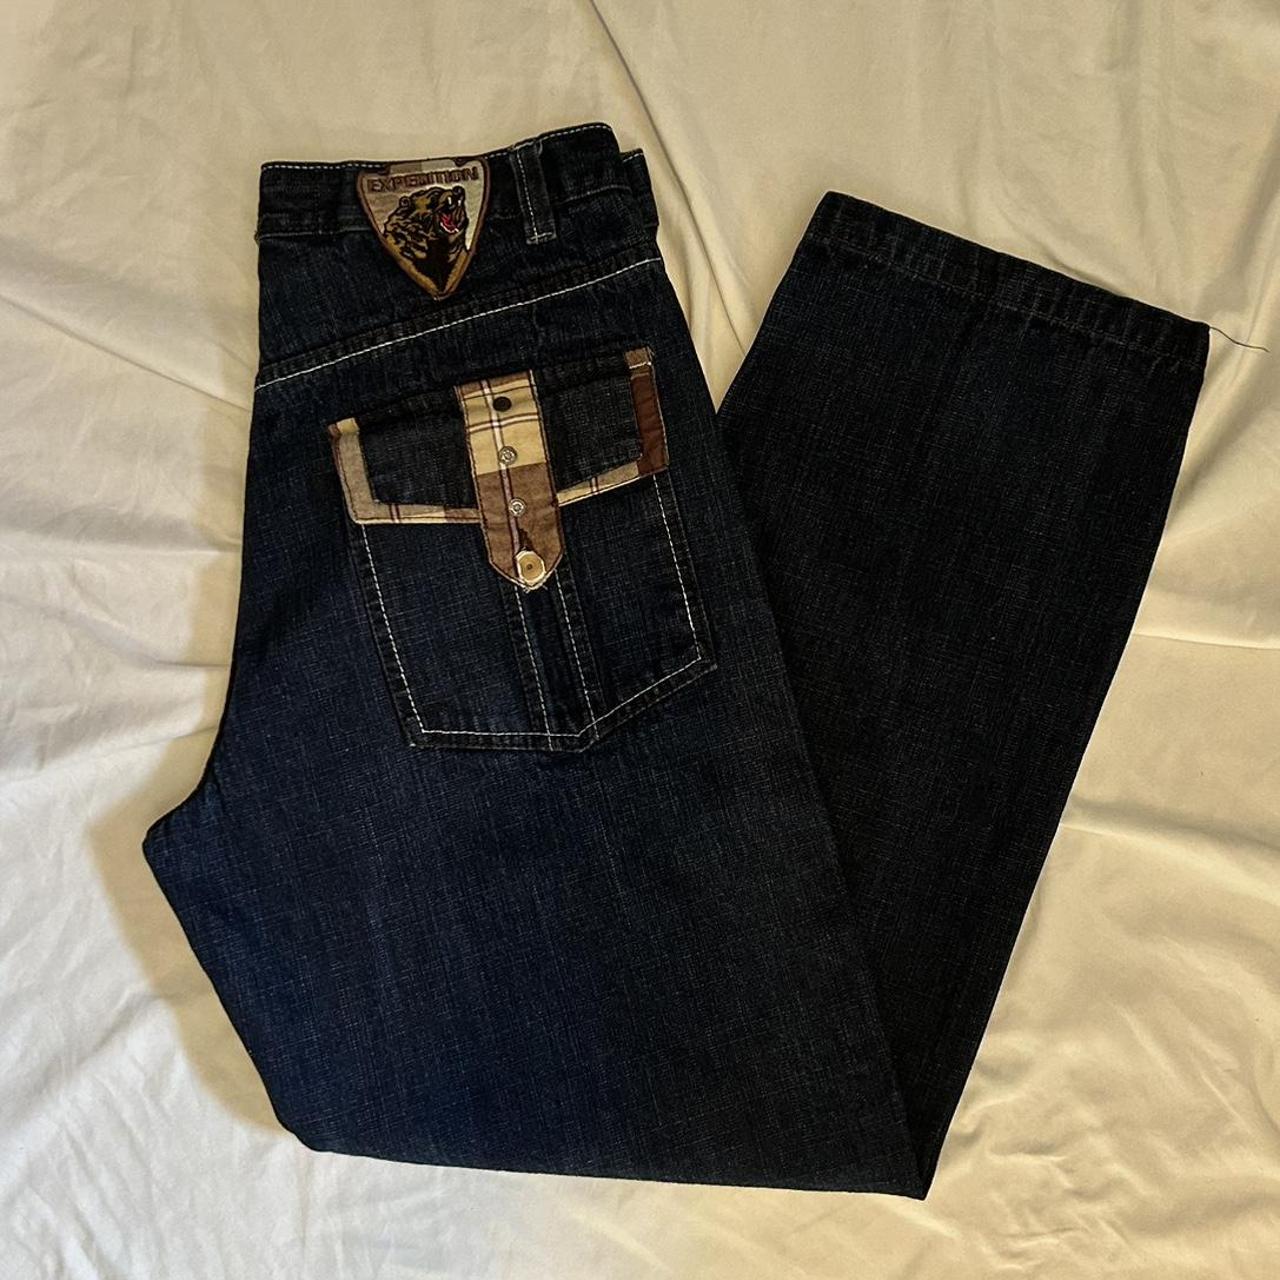 Size 36 men’s Evolution indesign jeans with cool... - Depop